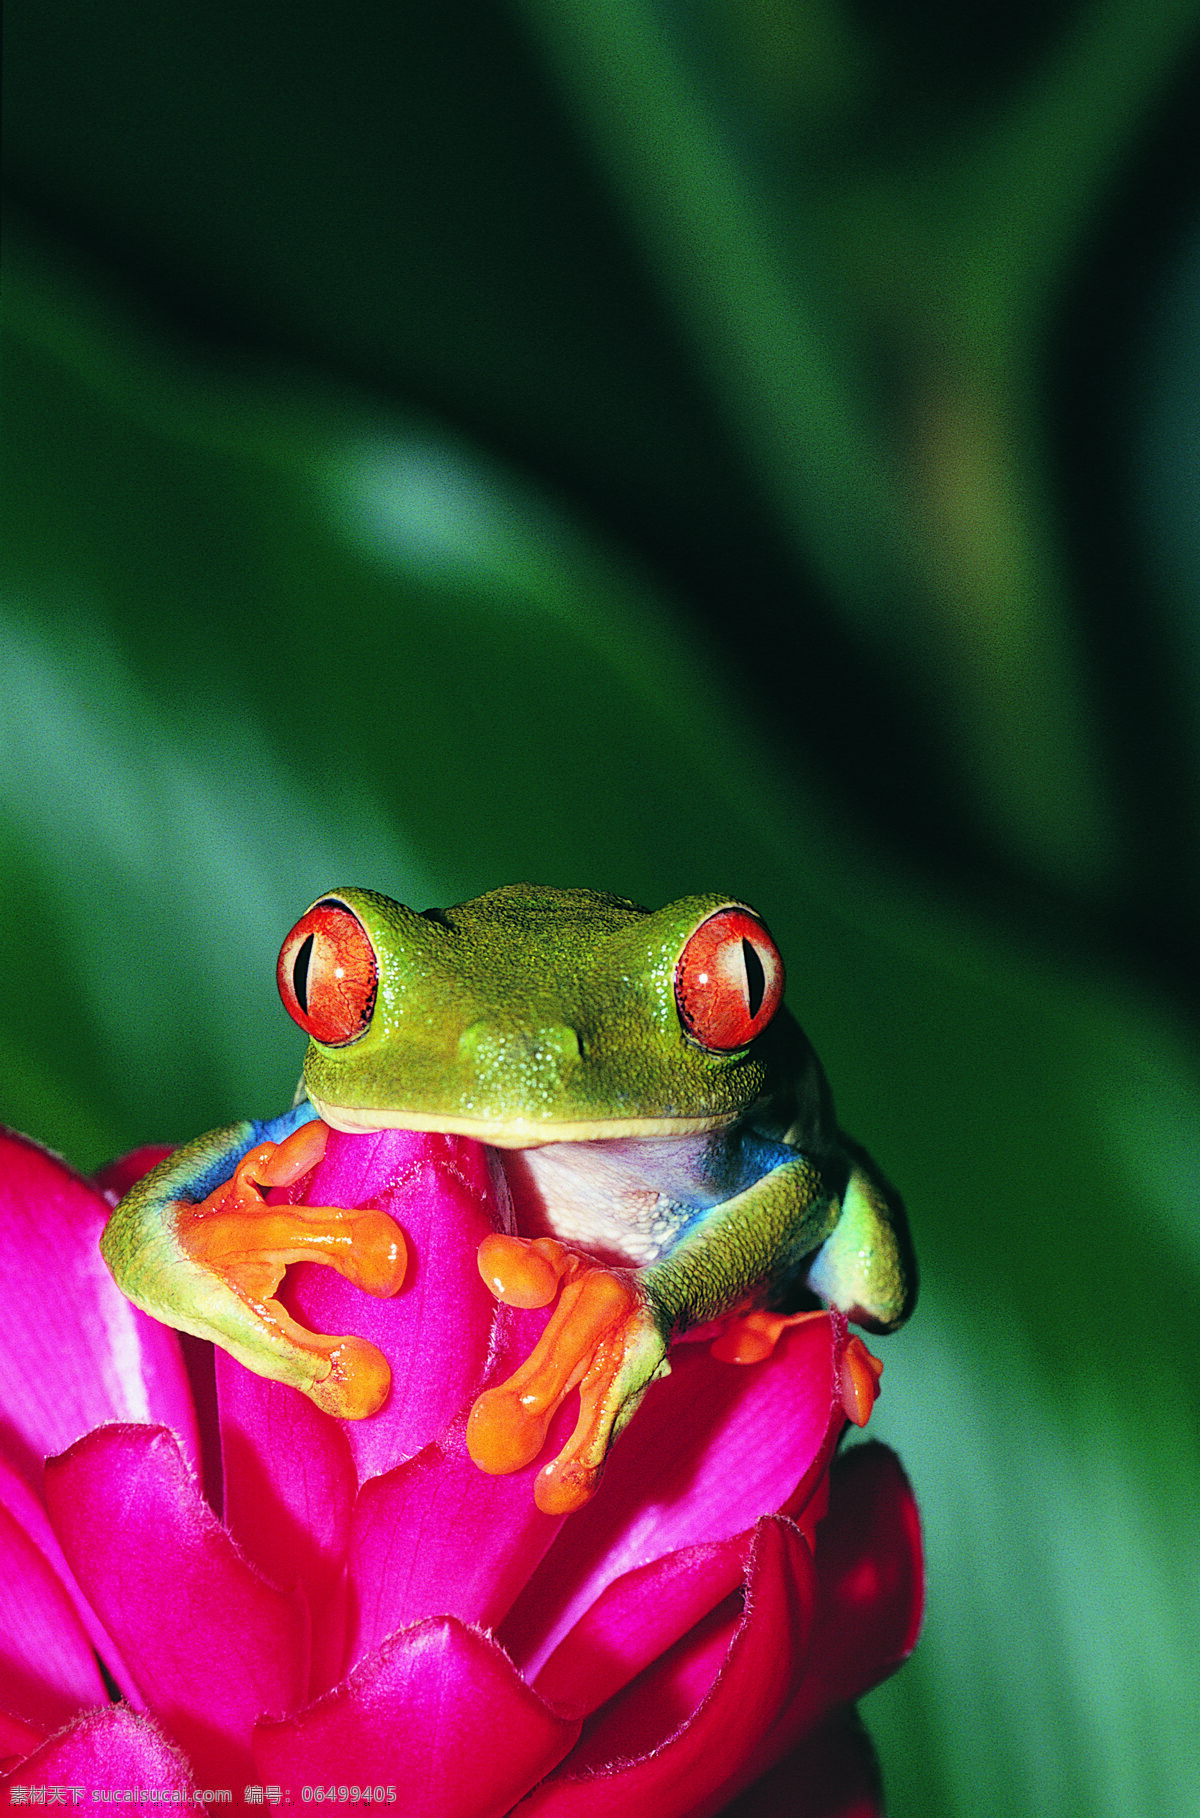 鲜花上的青蛙 野生动物 动物世界 两栖动物 青蛙 摄影图 陆地动物 生物世界 红色